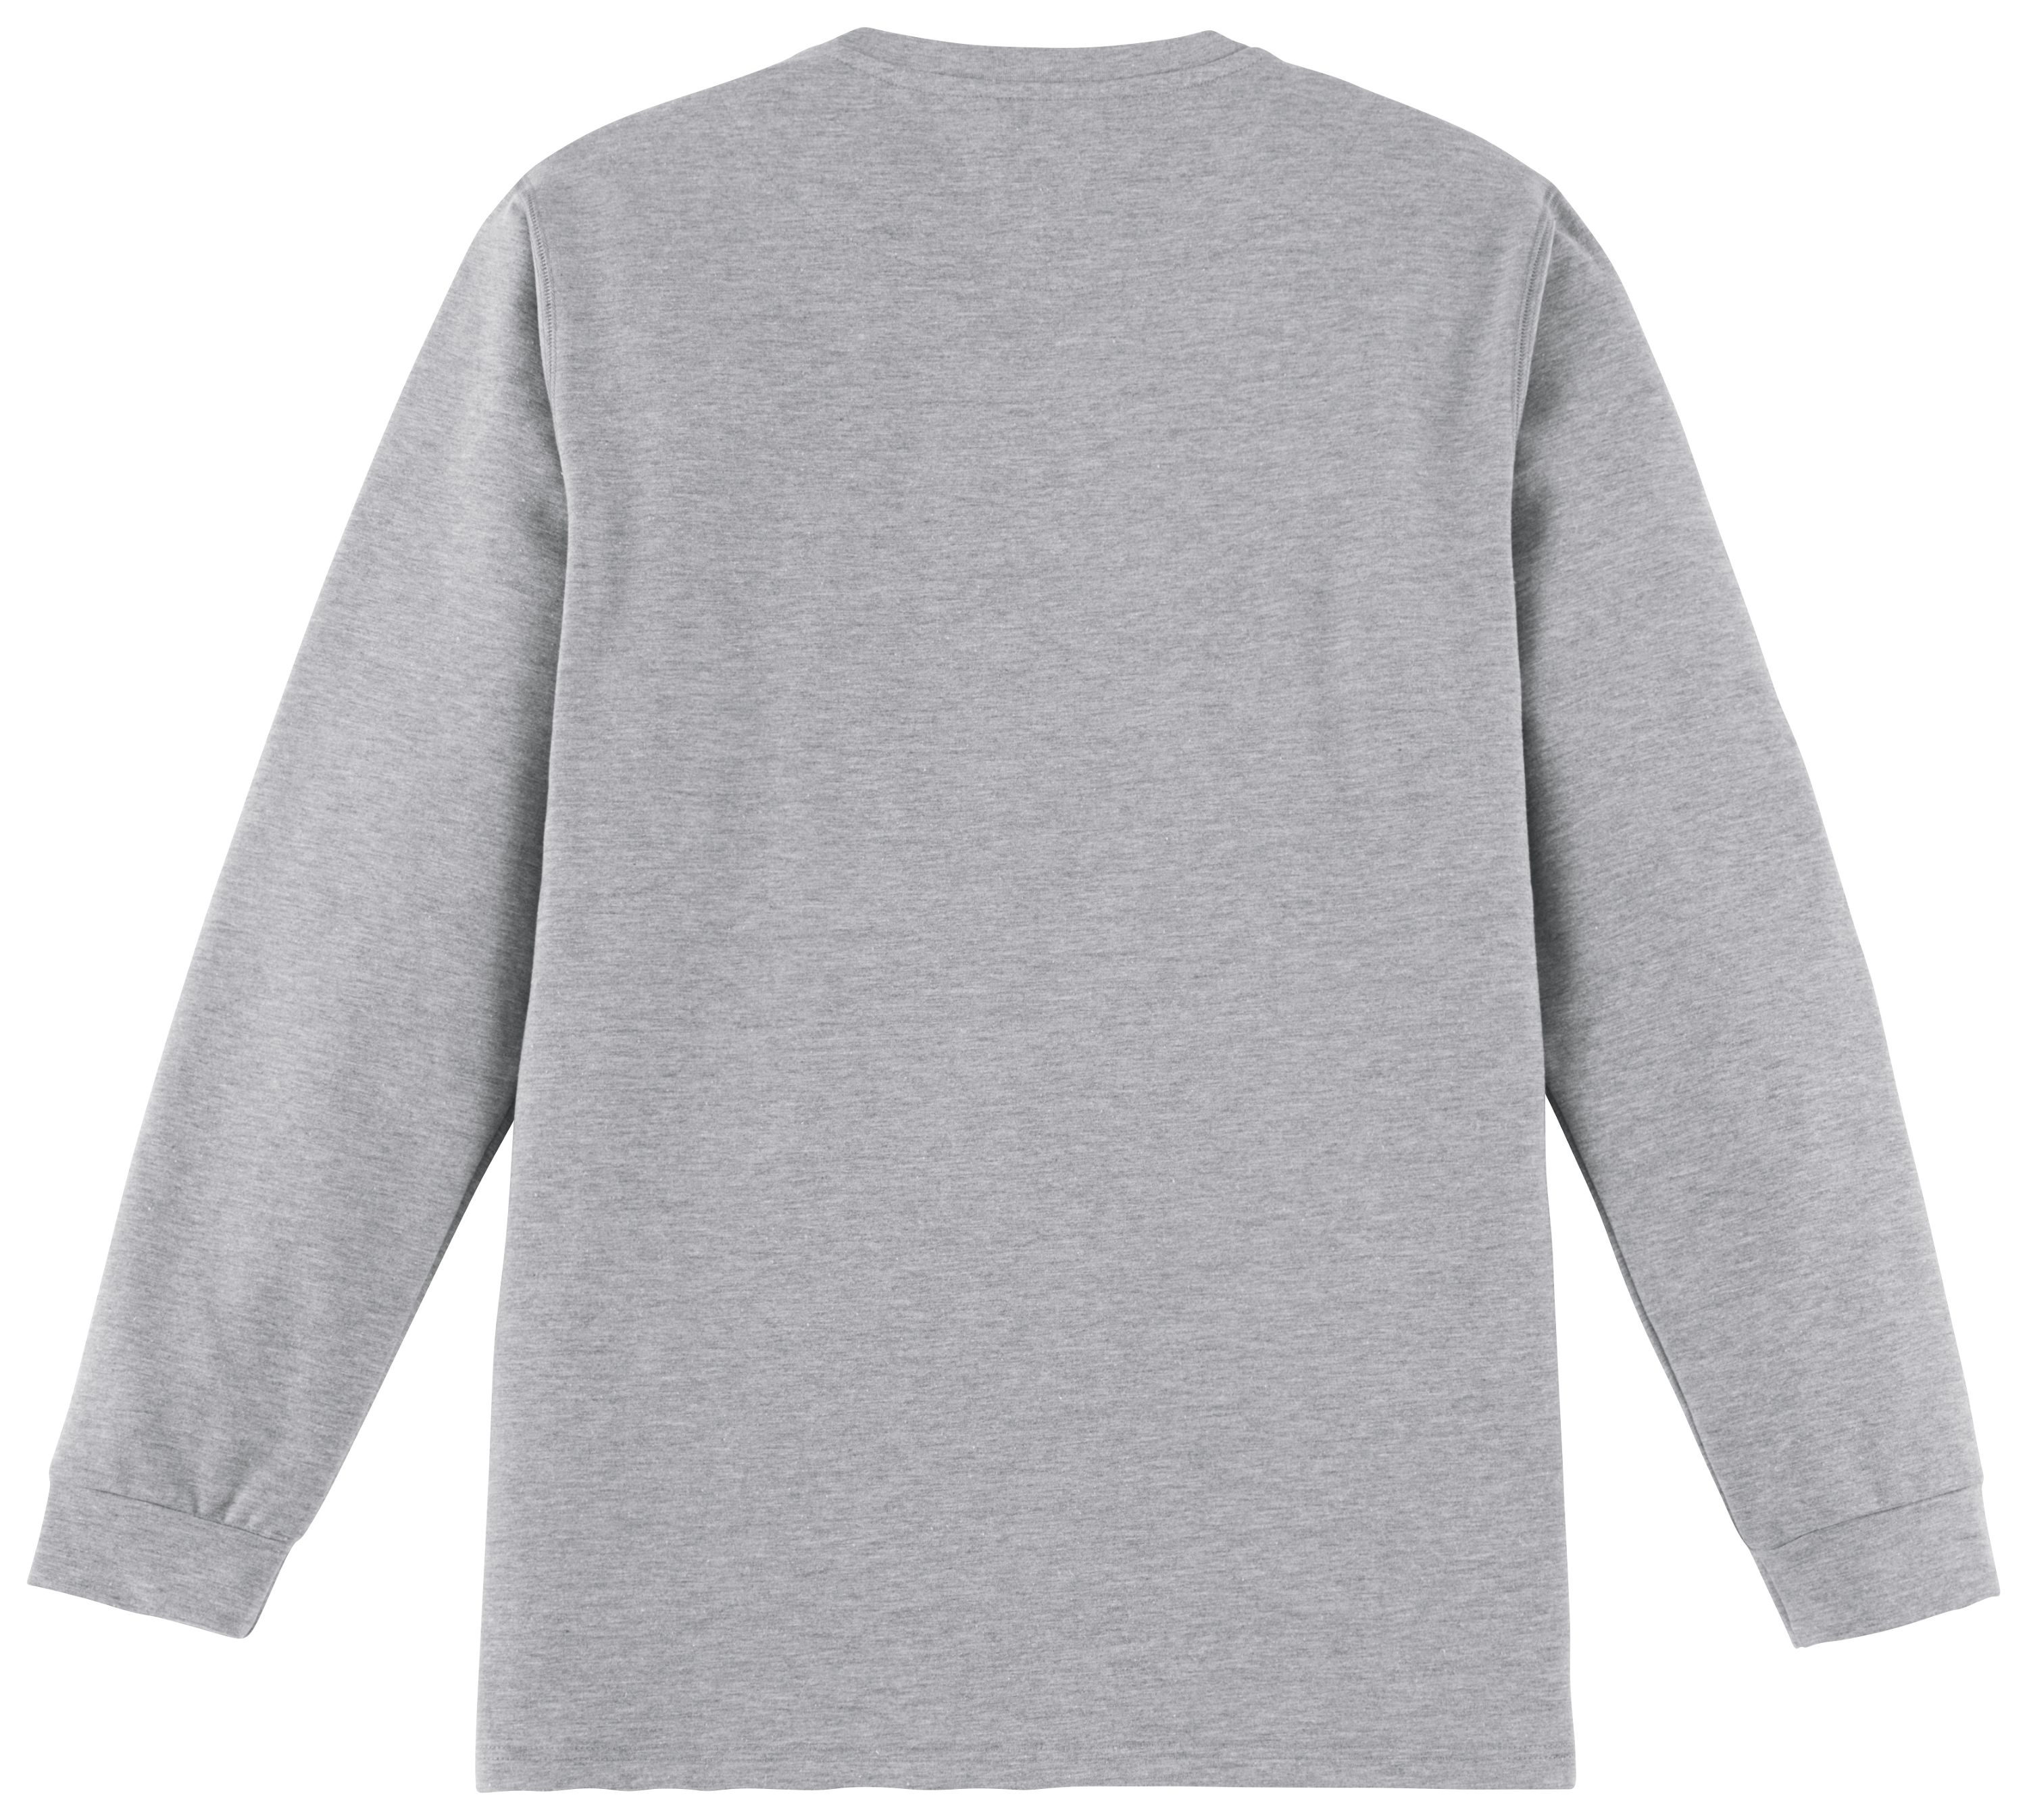 Die Rückseite des grauen Logan-Sweatshirts